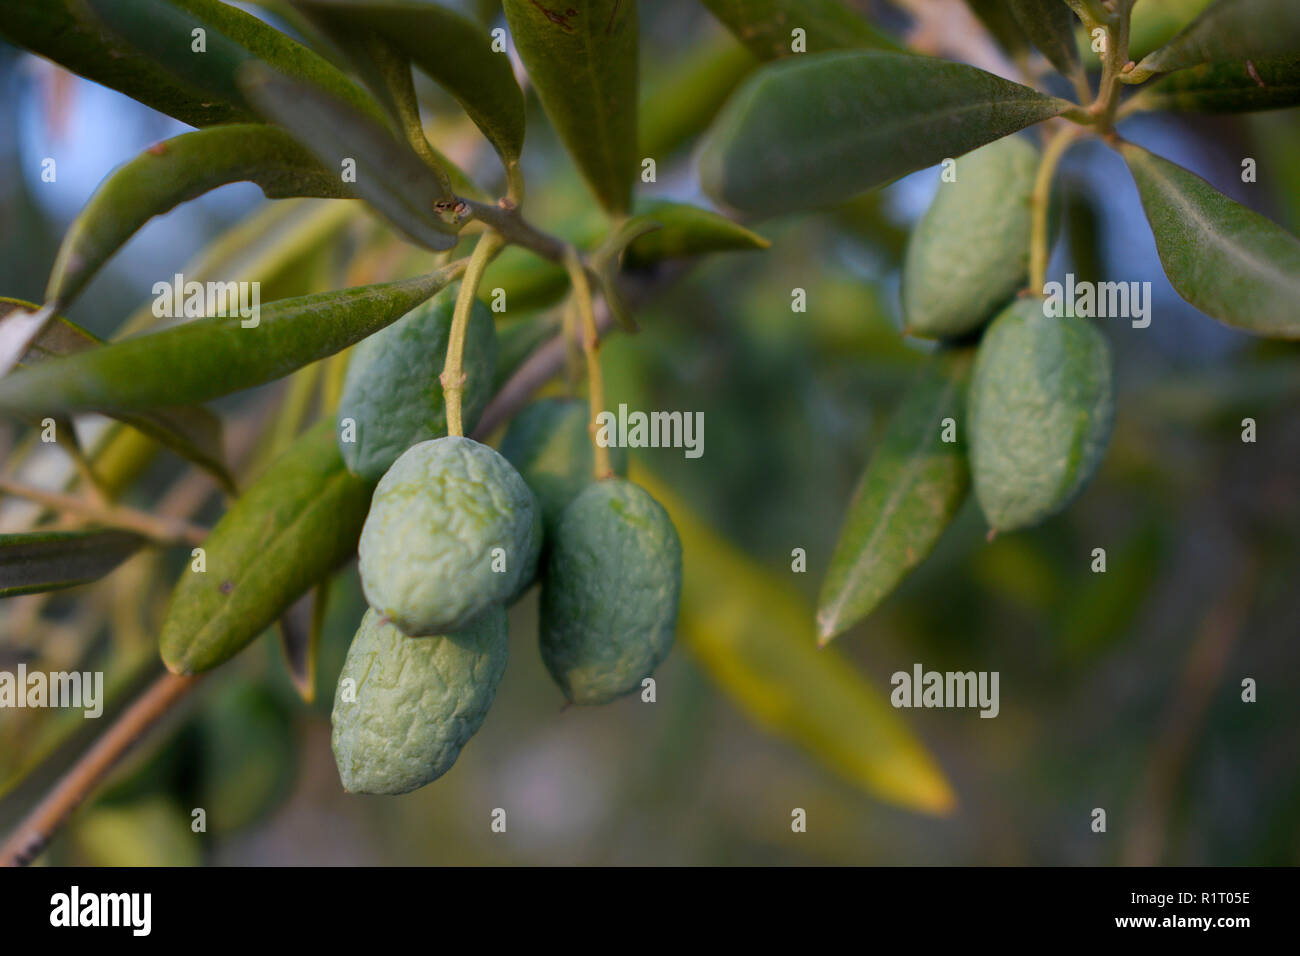 Problem der fehlende Regen in den Anbau des Olivenbaums. Faltige Oliven auf dem Olivenzweig. Stockfoto